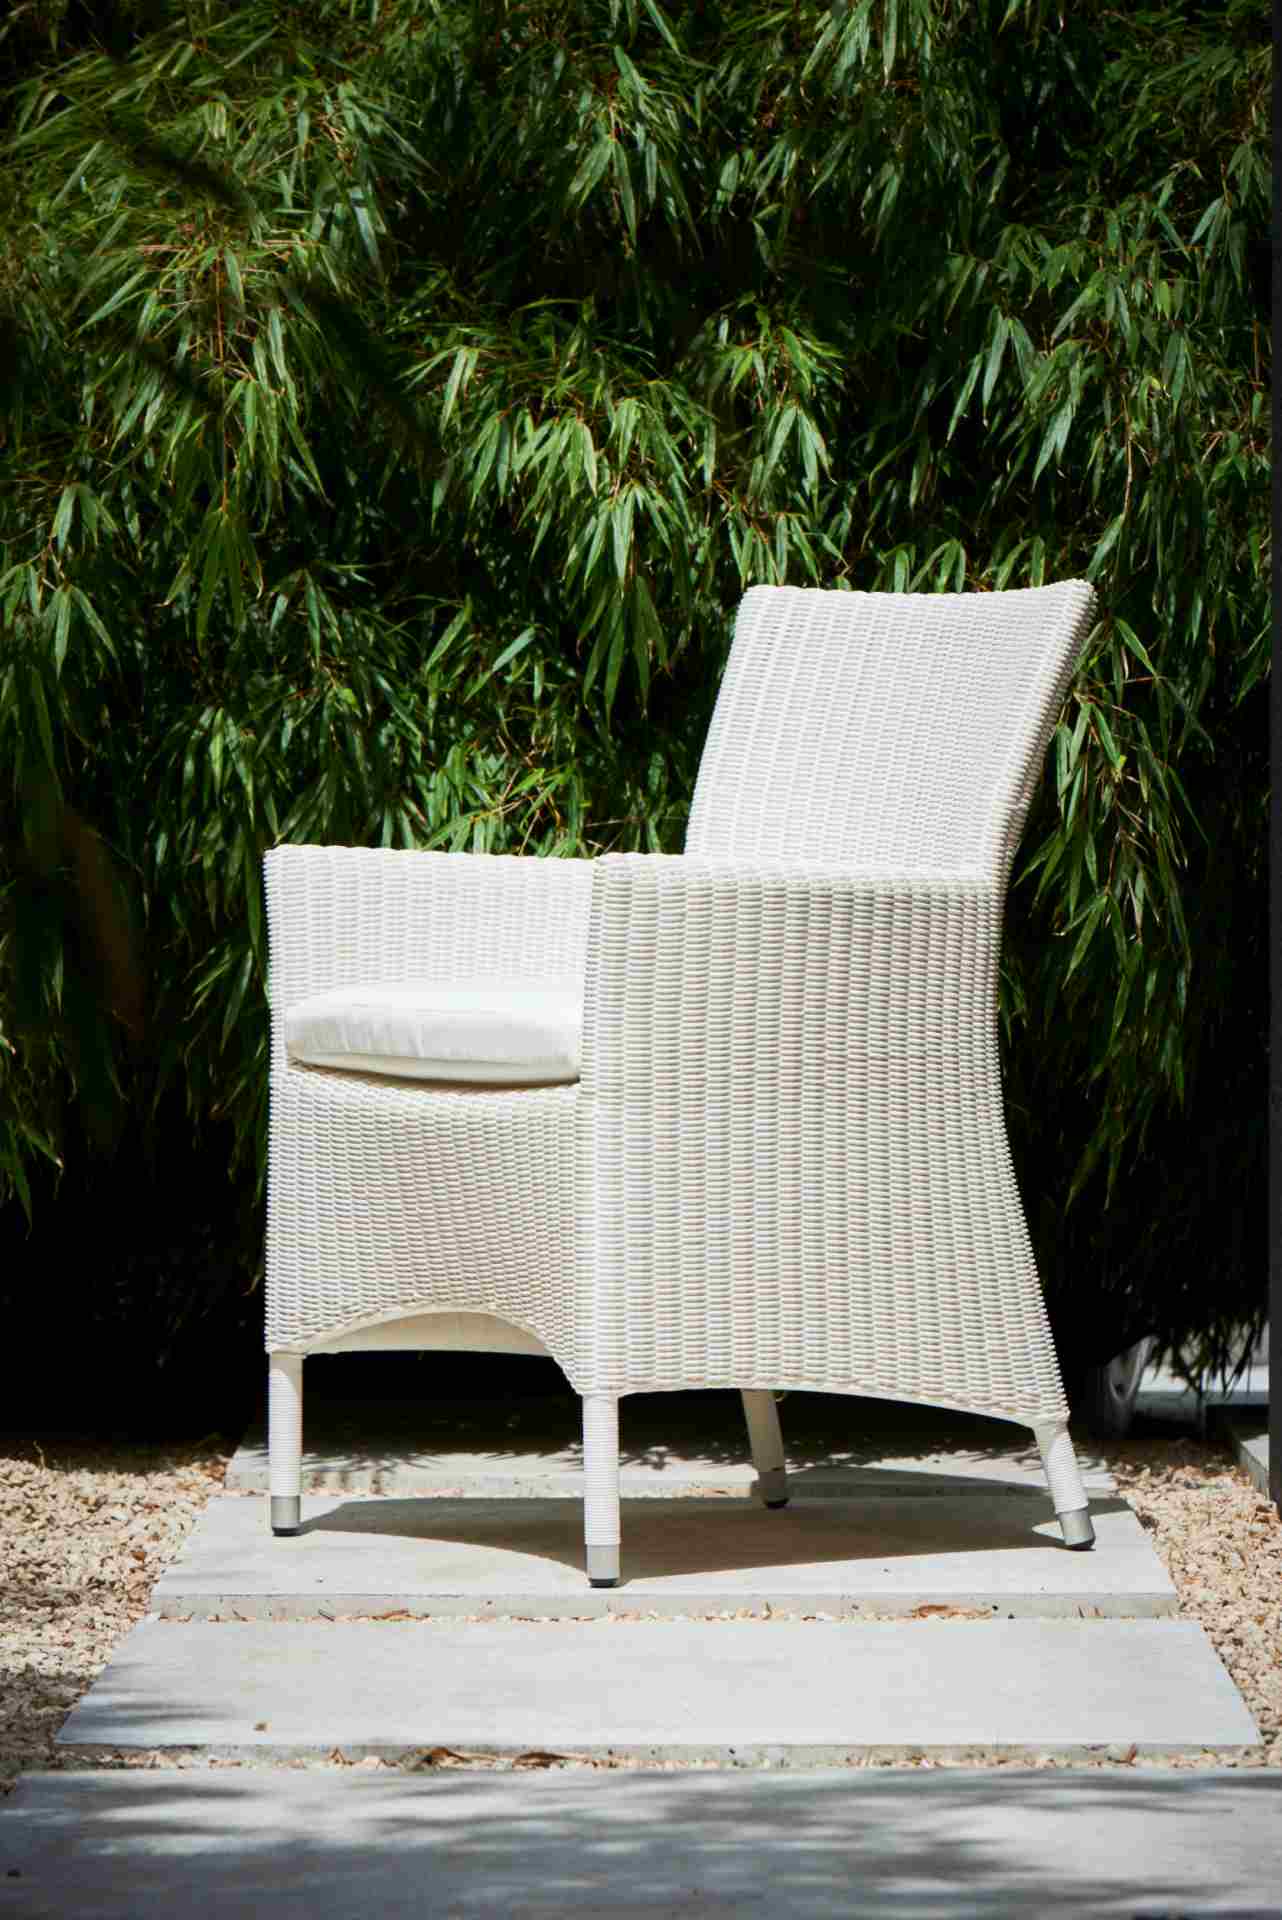 Der klassische Gartensessel Poesie wurde speziell für denn Outdoor-Bereich gefertigt. Hergestellt wurde dieser von der Marke Jan Kurtz. Die Farbe des Sessels ist Weiß.